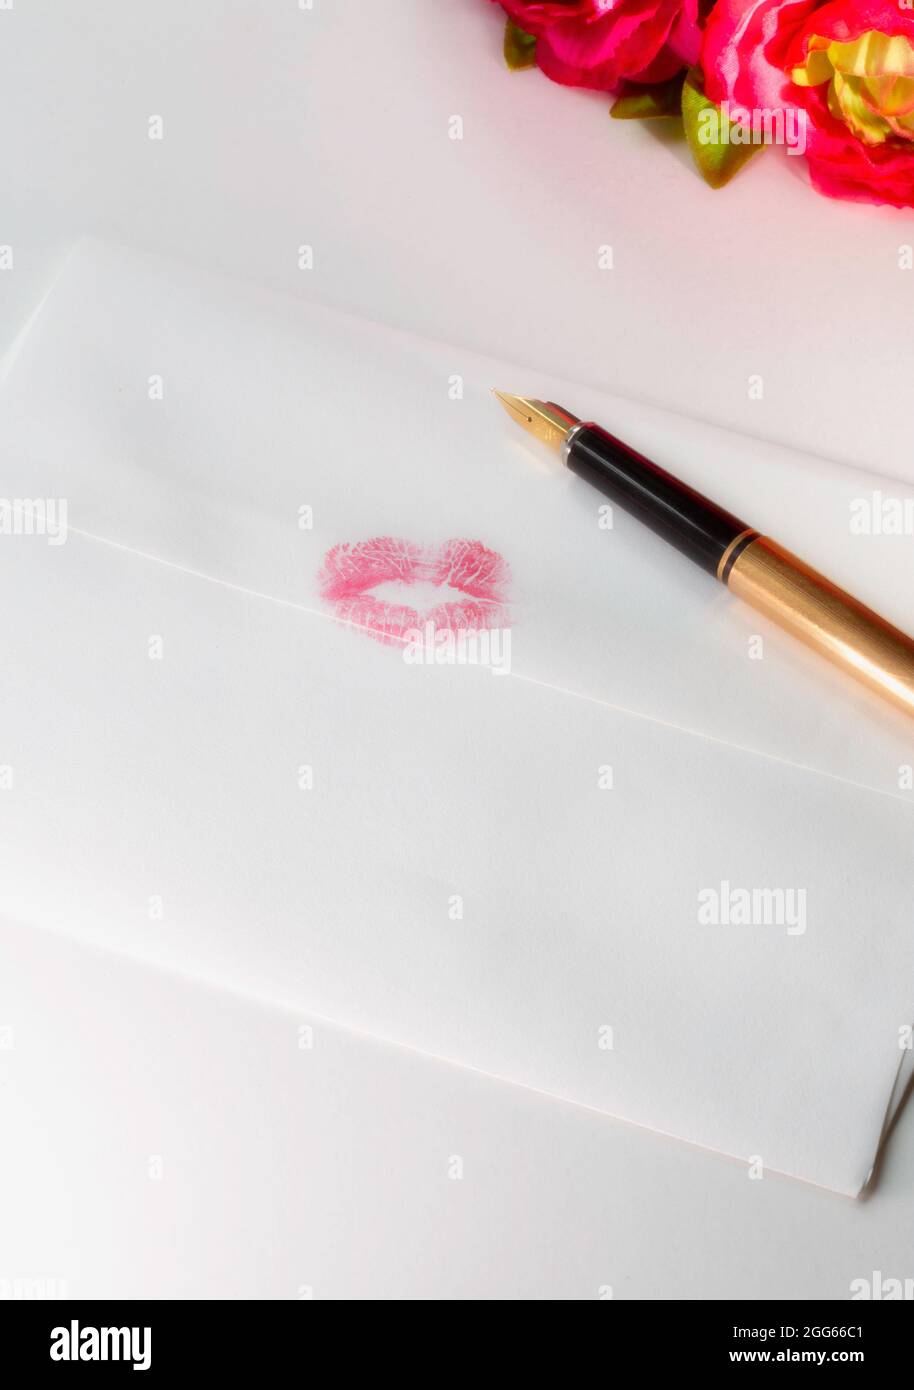 La lettera d'amore è sigillata con un bacio. Foto Stock